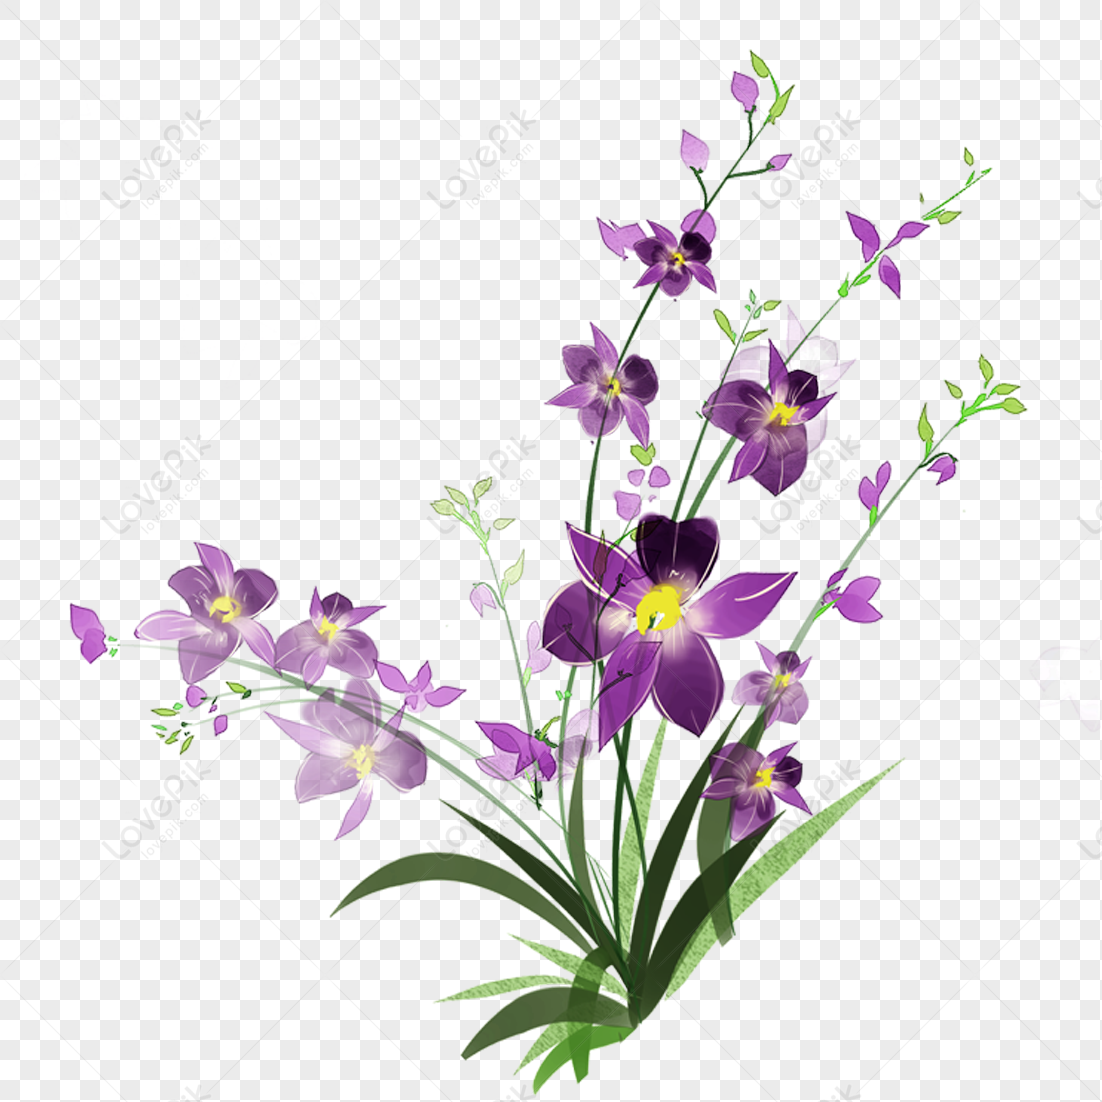 Hoa sáng với màu sắc rực rỡ và đầy sức sống. Hình ảnh hoa sáng PNG sẽ làm bạn phấn khích và cảm nhận được vẻ đẹp rực rỡ của chúng. Hãy quan sát các chi tiết nhỏ trên ảnh và dành thời gian để tận hưởng sự tinh tế của hoa.